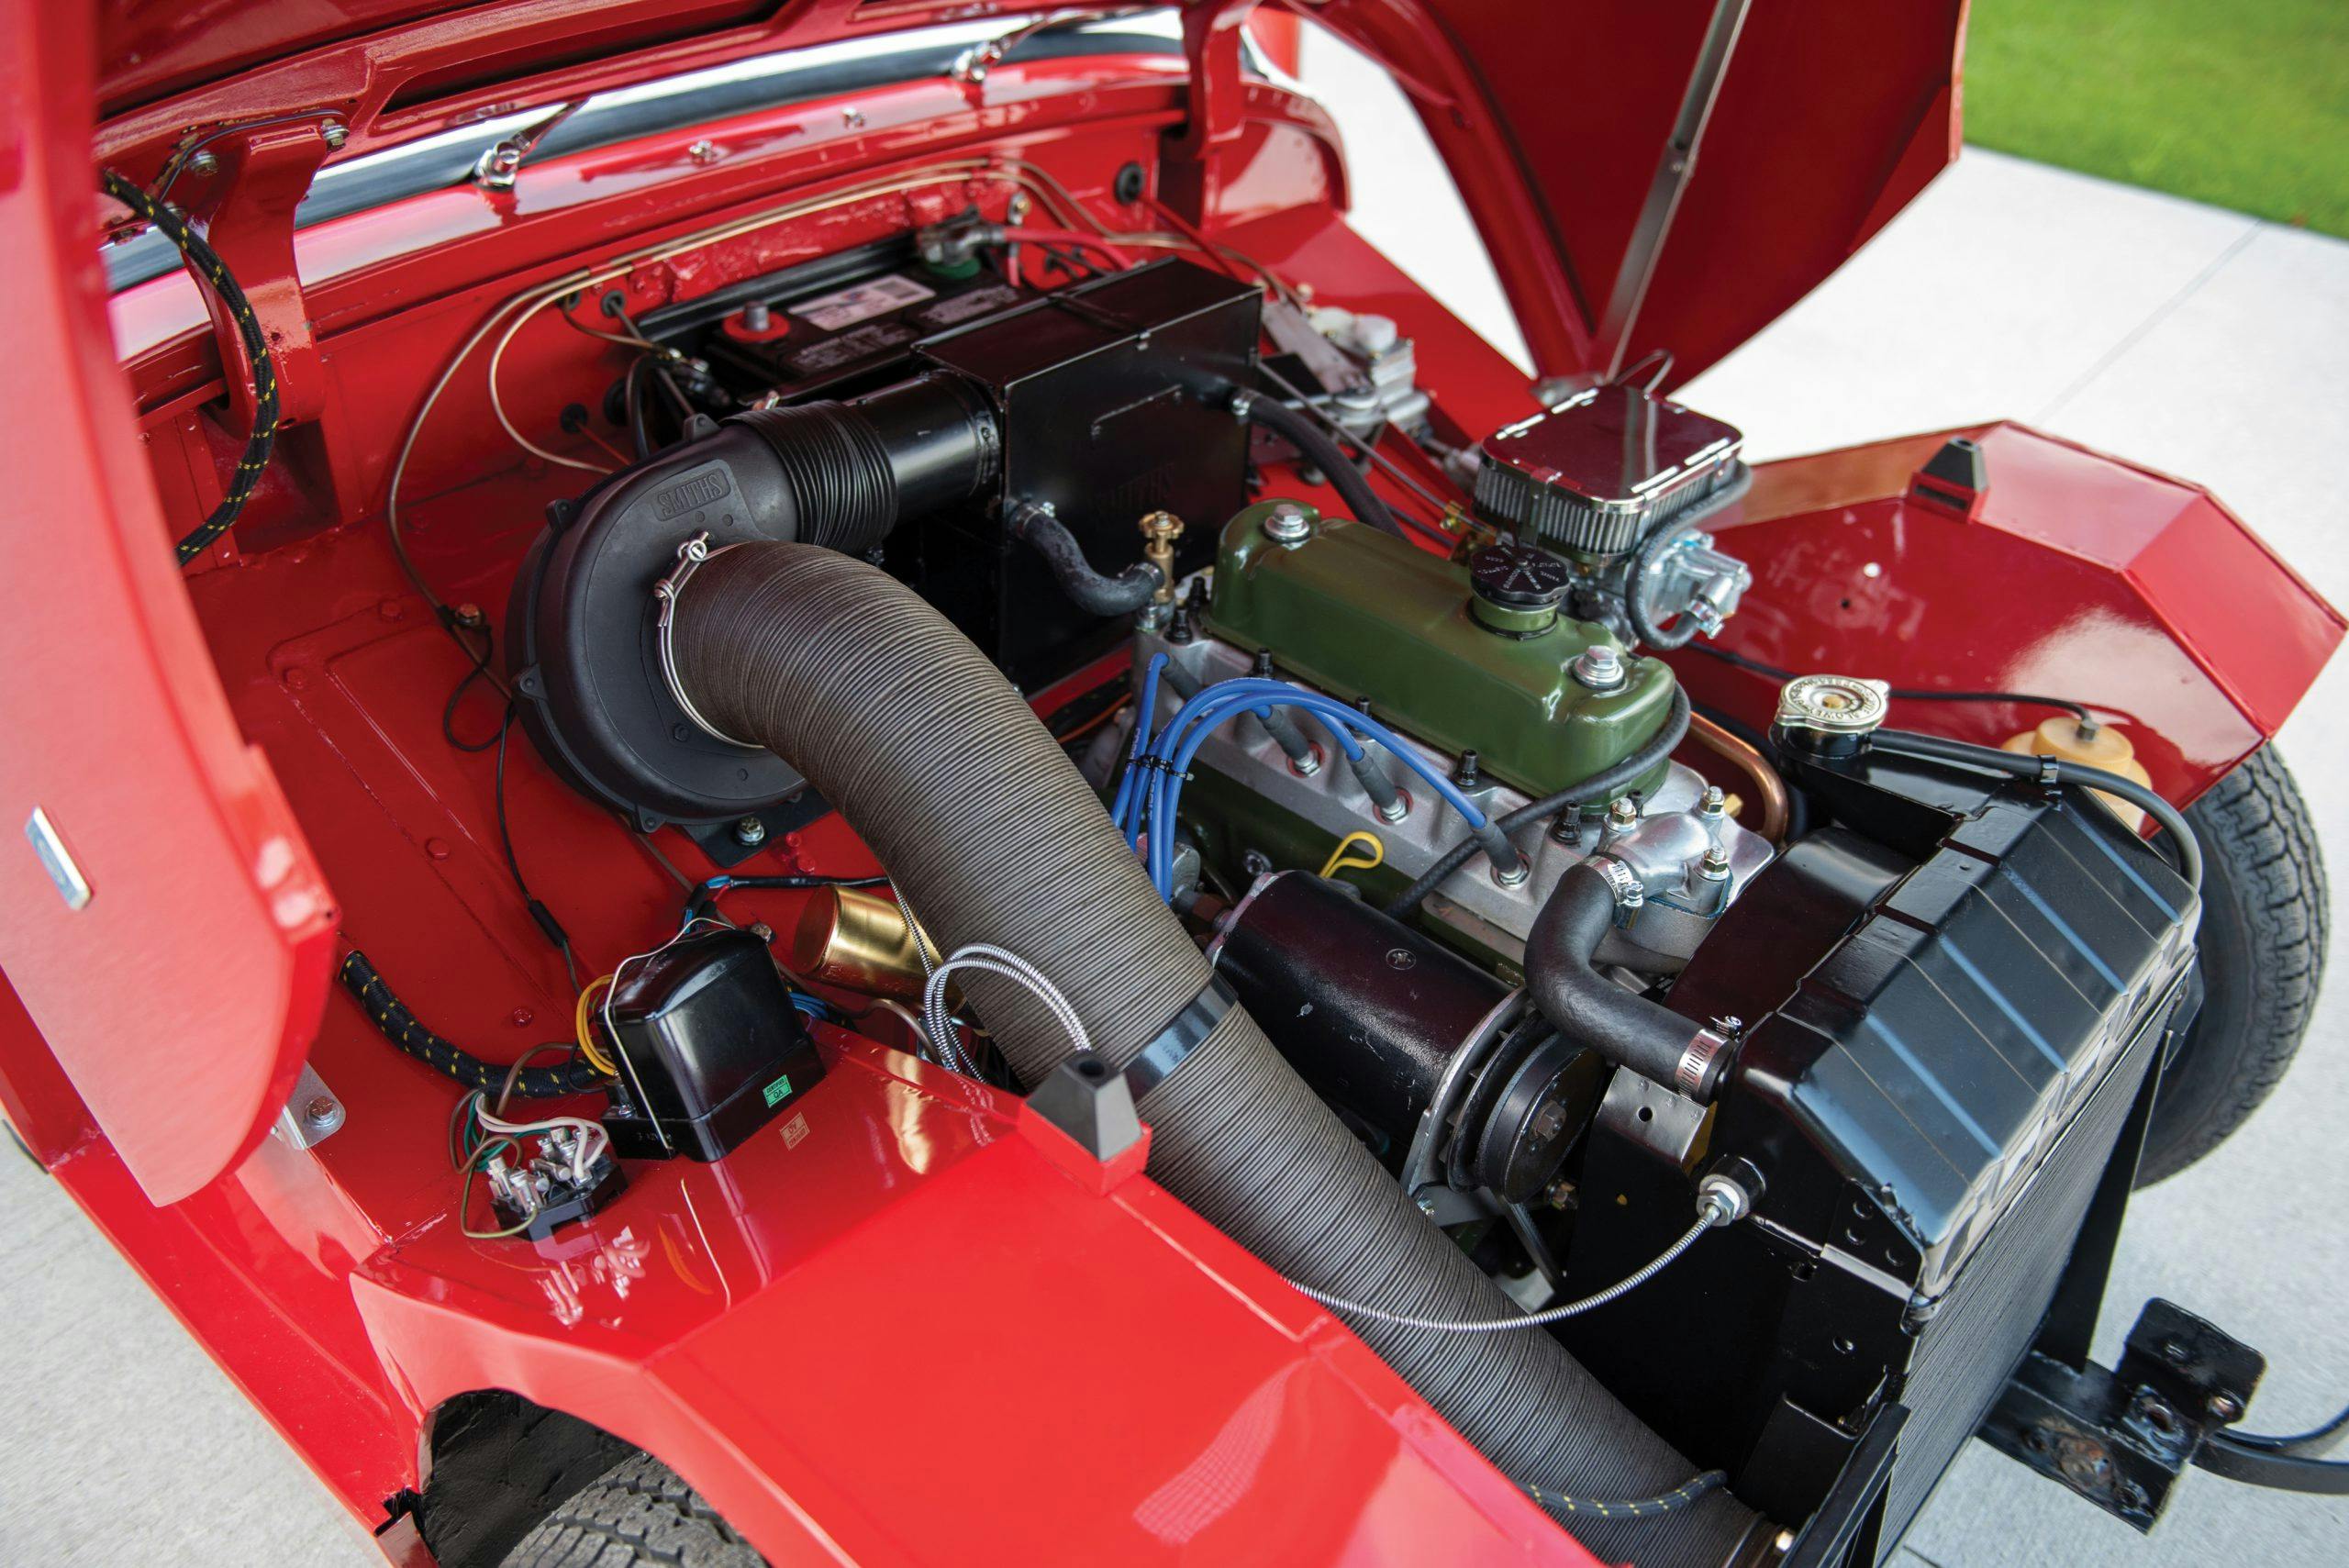 1959 Austin Healey Sprite Bugeye upgraded 4 cylinder engine